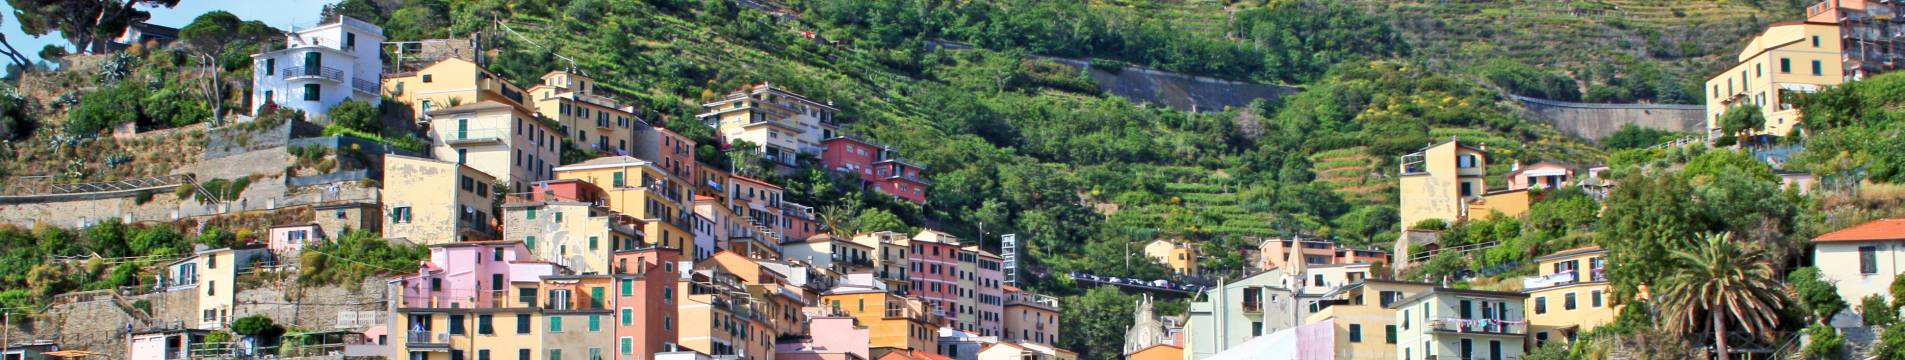 Jeder sollte dort gewesen sein: Die Cinque Terre! Wandern und Dolce Vita